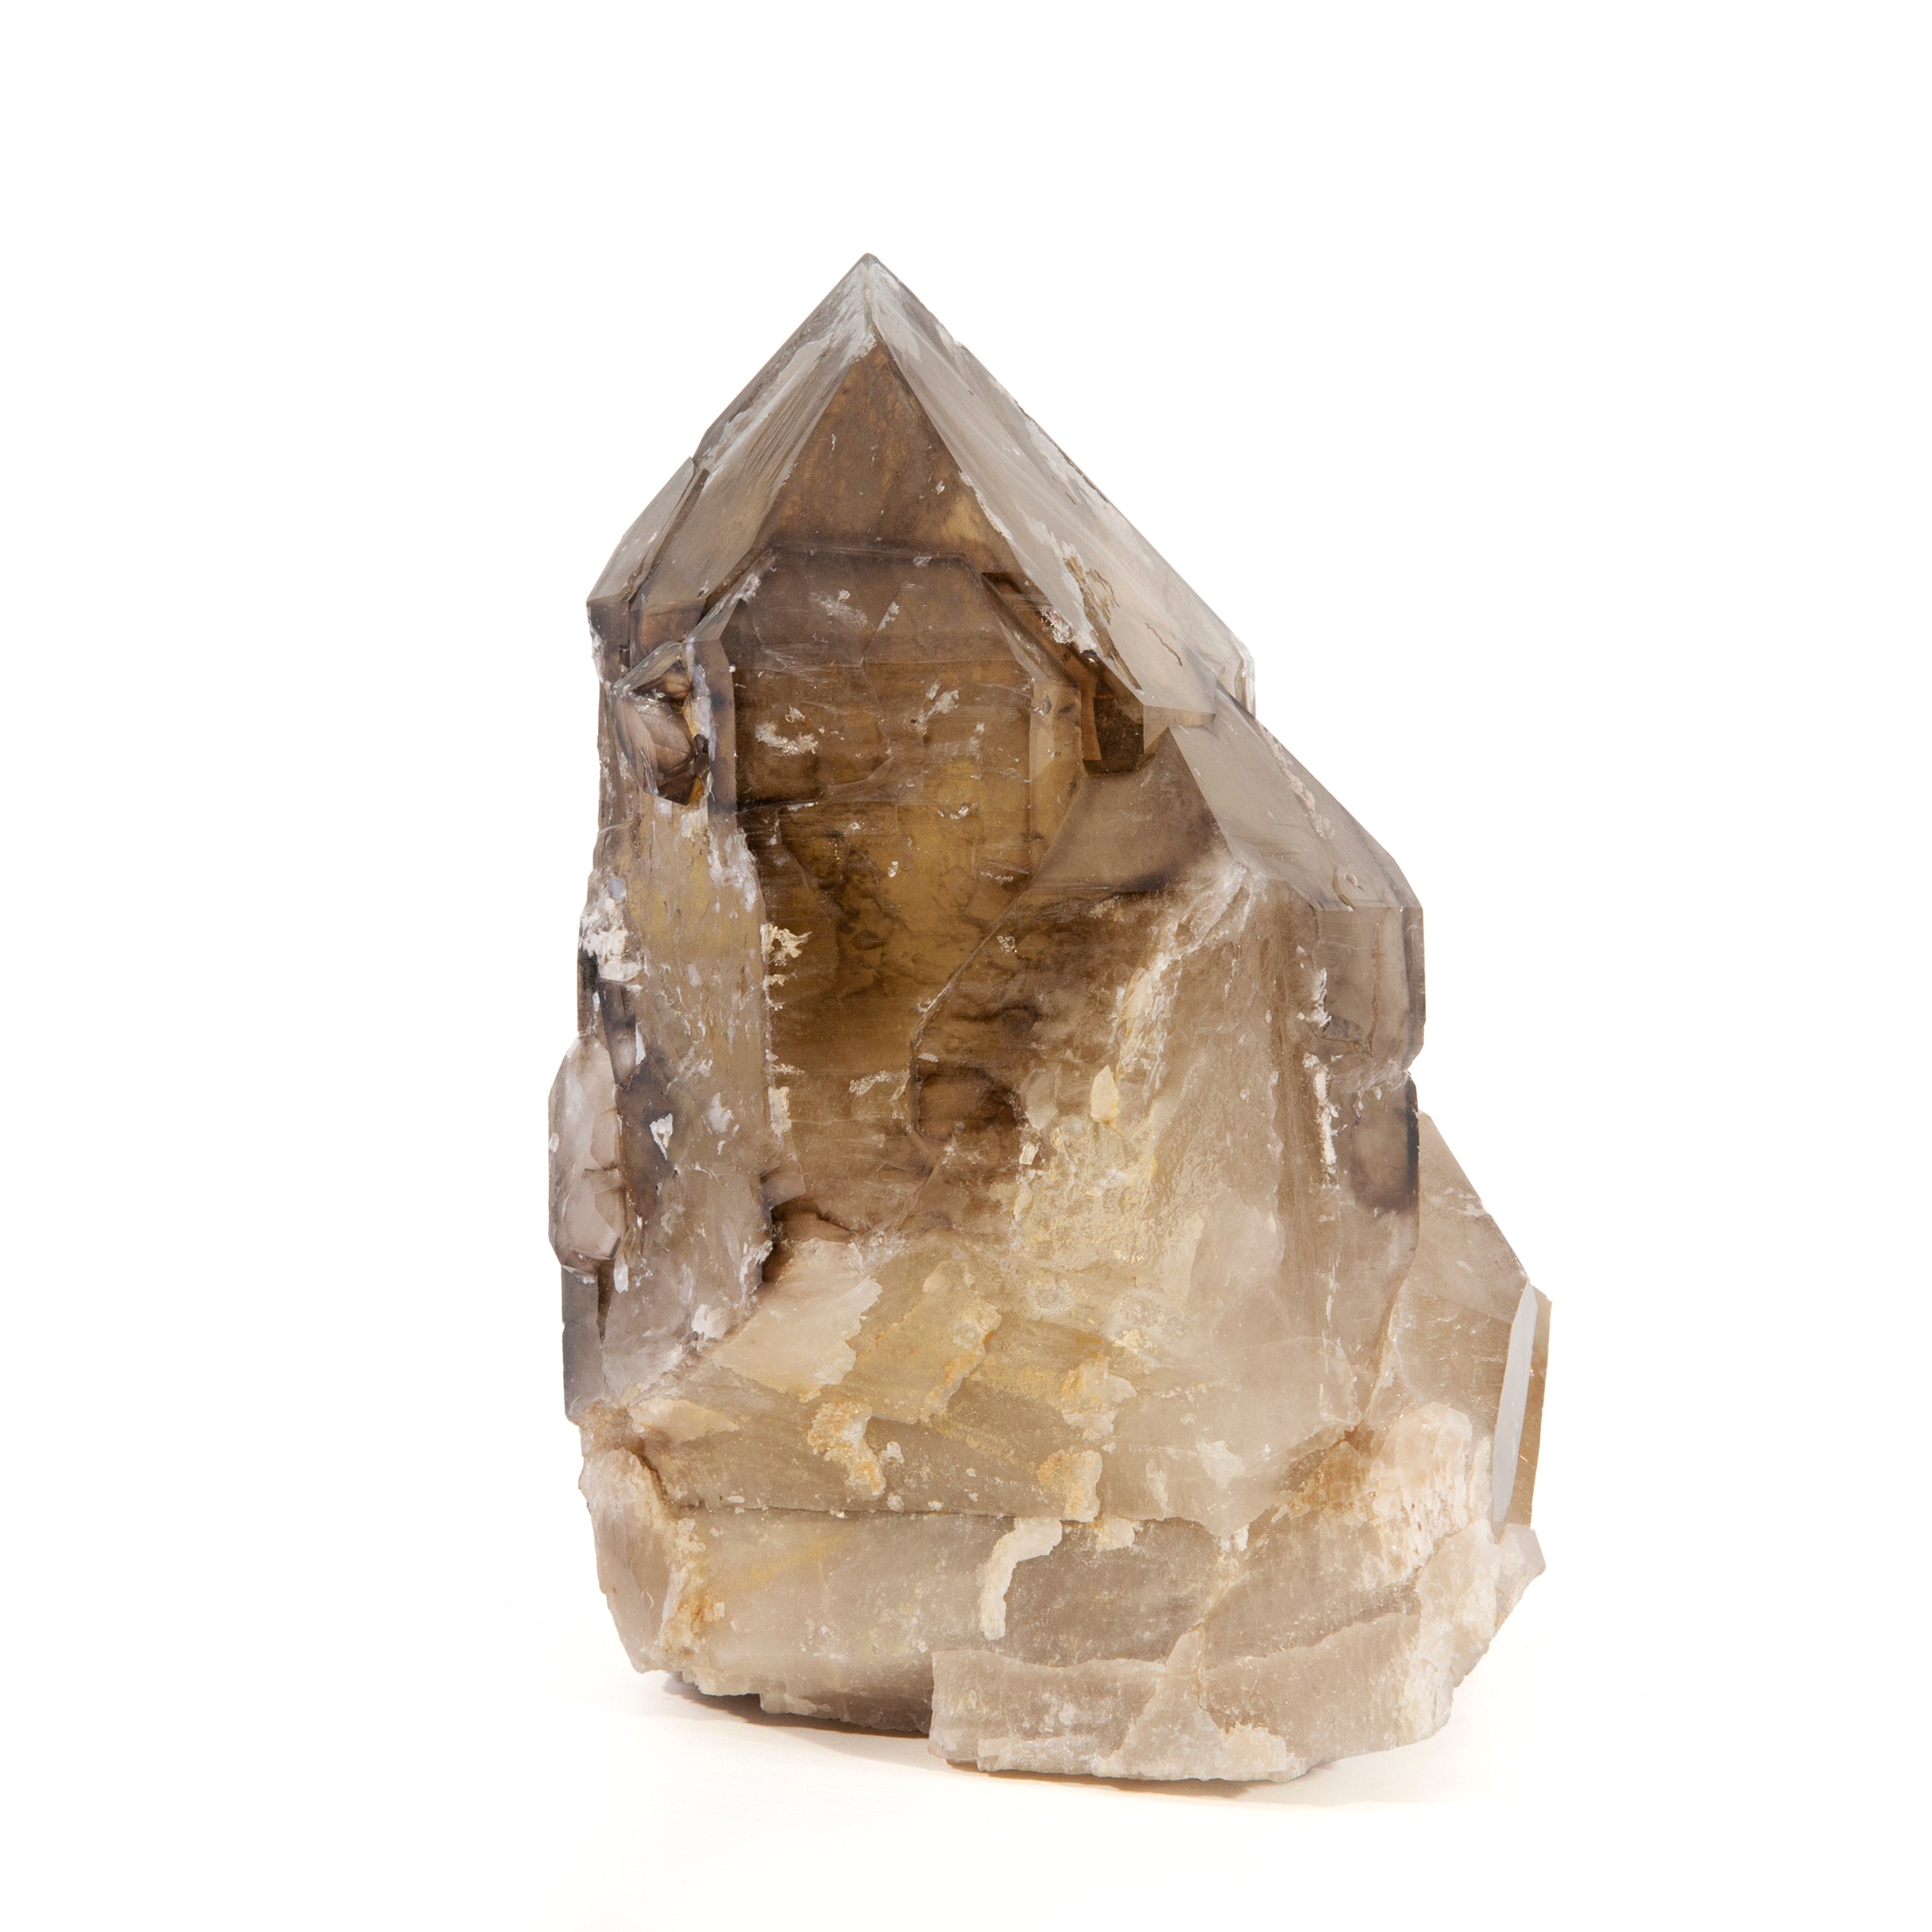 Smoky Quartz 7.75lb 7.5 inch Natural Crystal - Brazil - TX-033 - Crystalarium